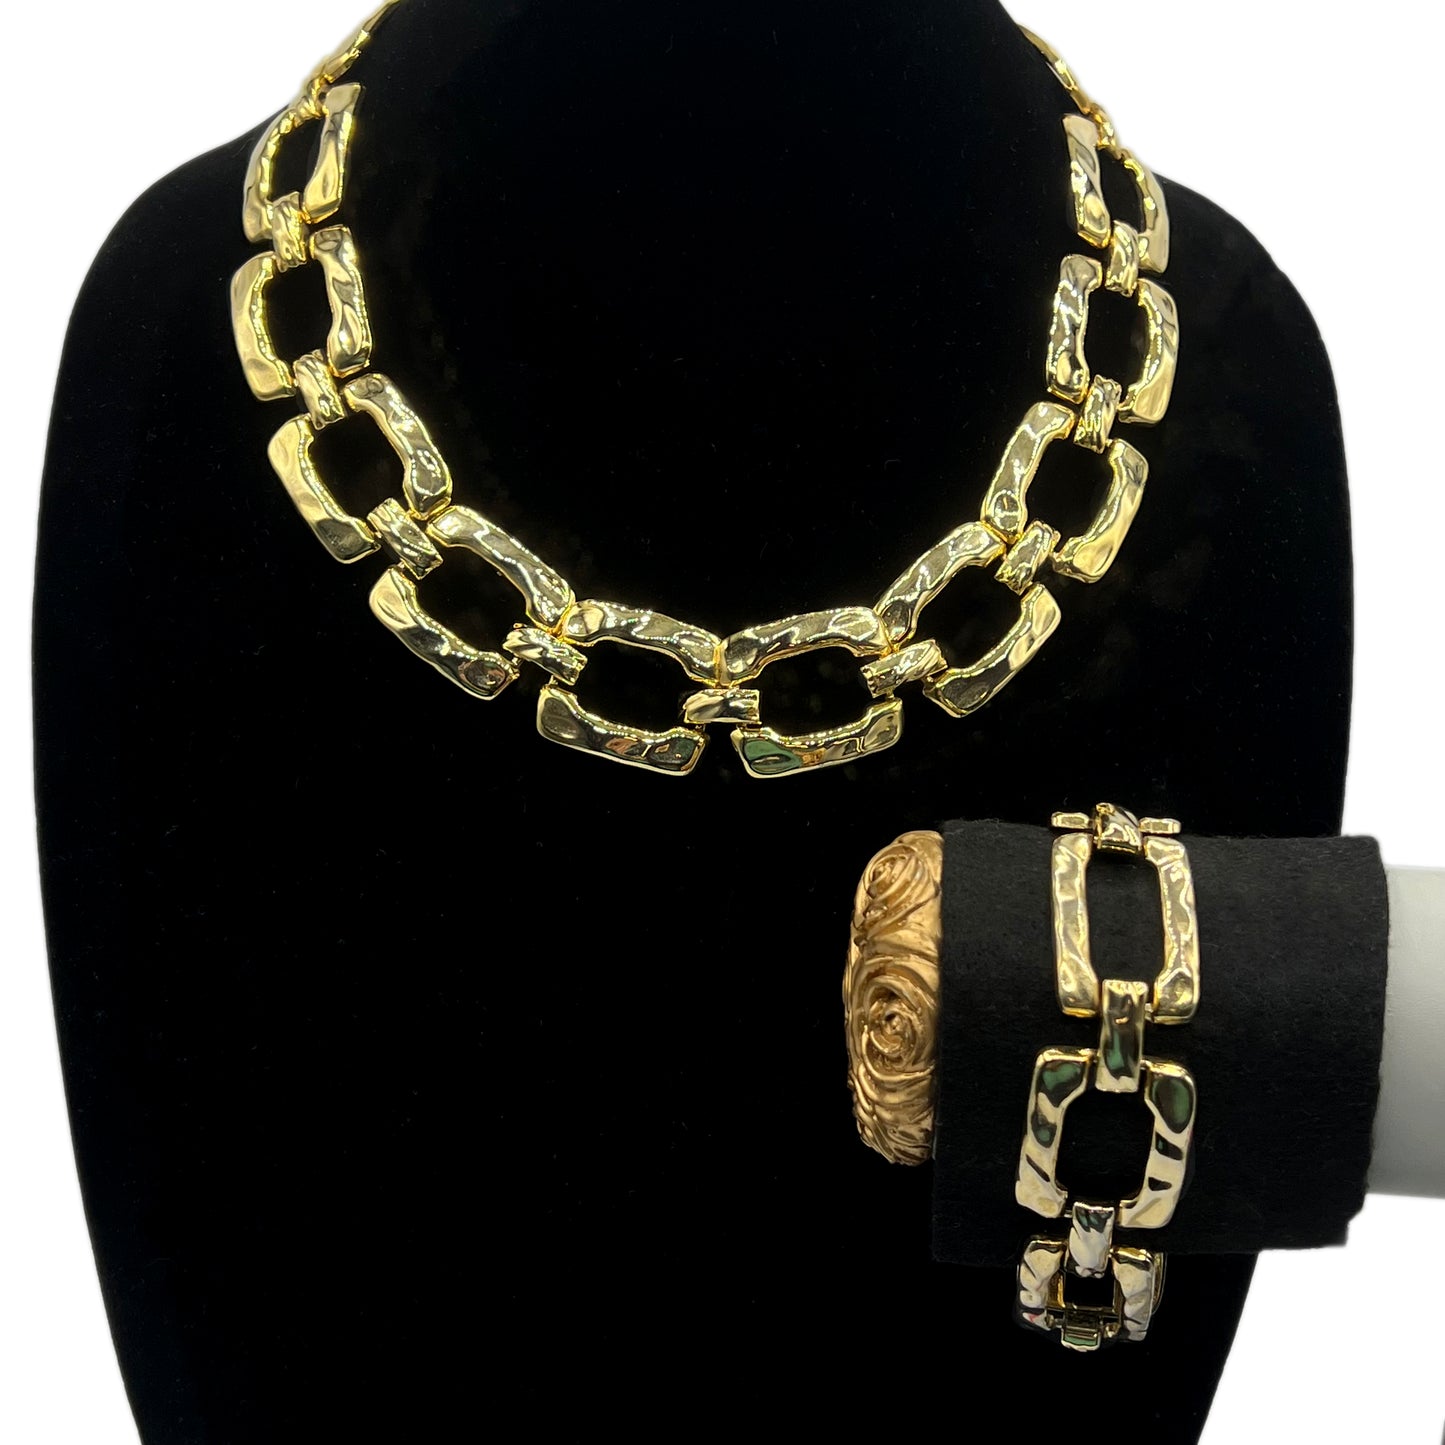 Vintage 1980s Hammered Square Link Necklace and Bracelet